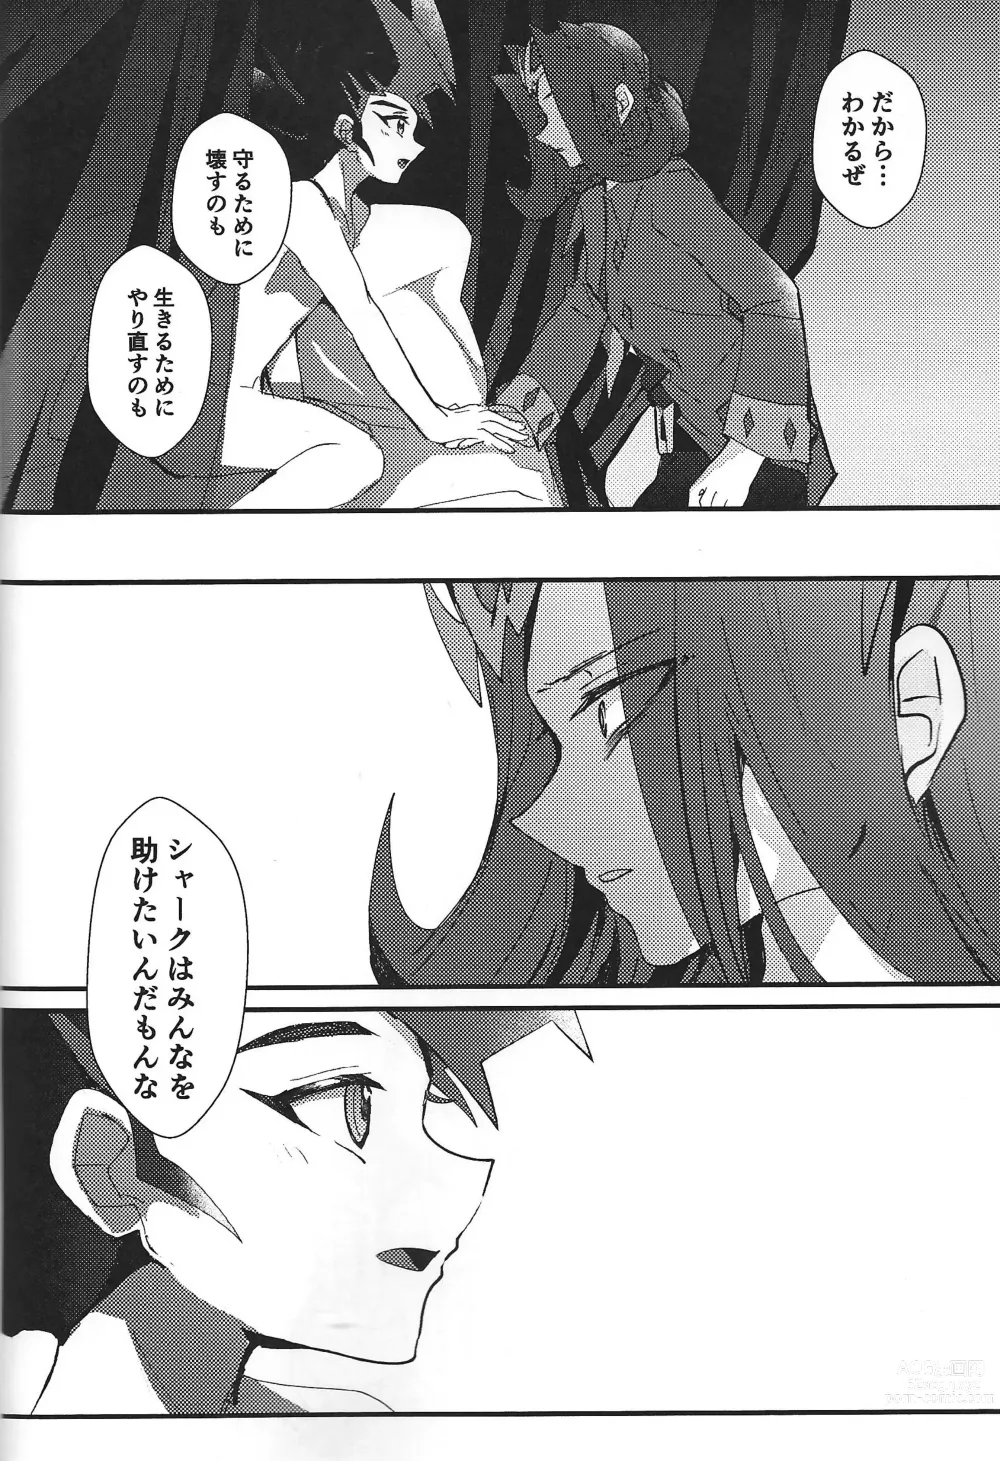 Page 92 of doujinshi ChaosPhantasma